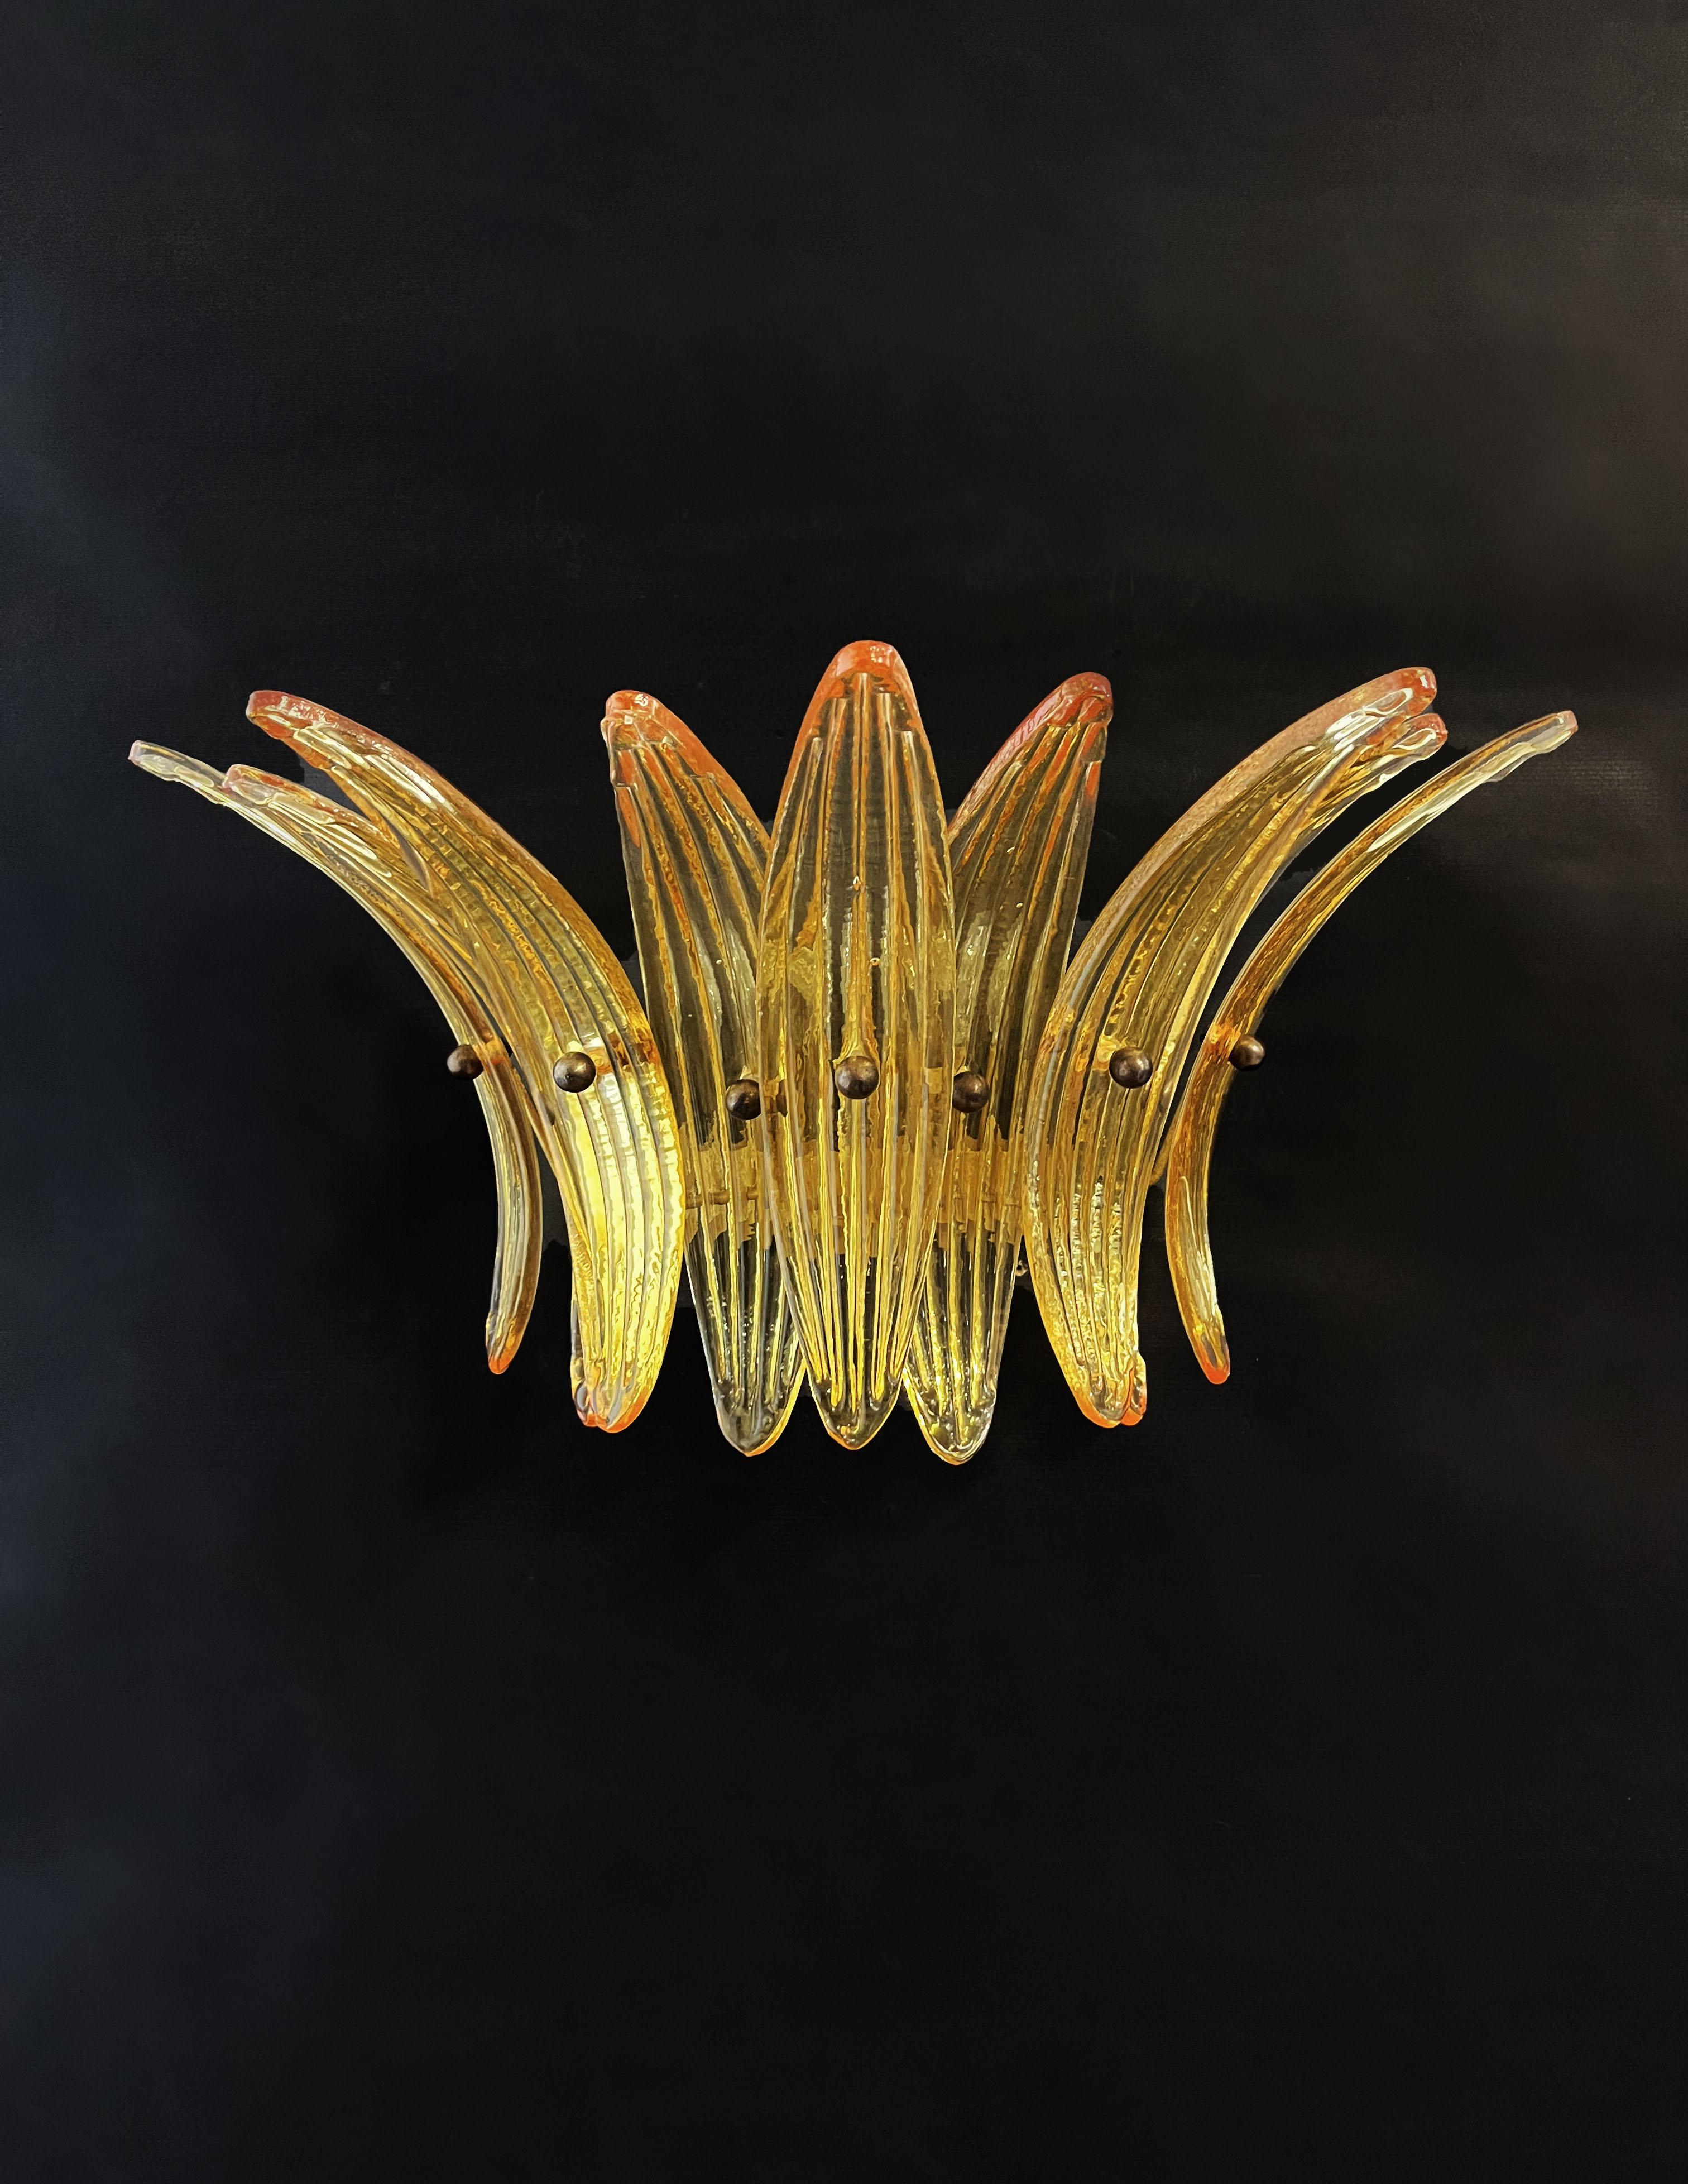 Paire d'appliques en verre de Murano luxueuses et authentiques. 100% fait à la main à Murano. Les appliques sont réalisées par 9 palmettes en verre ambré de Murano faites à la main, pour chacune d'entre elles, dans un cadre en métal massif peint en